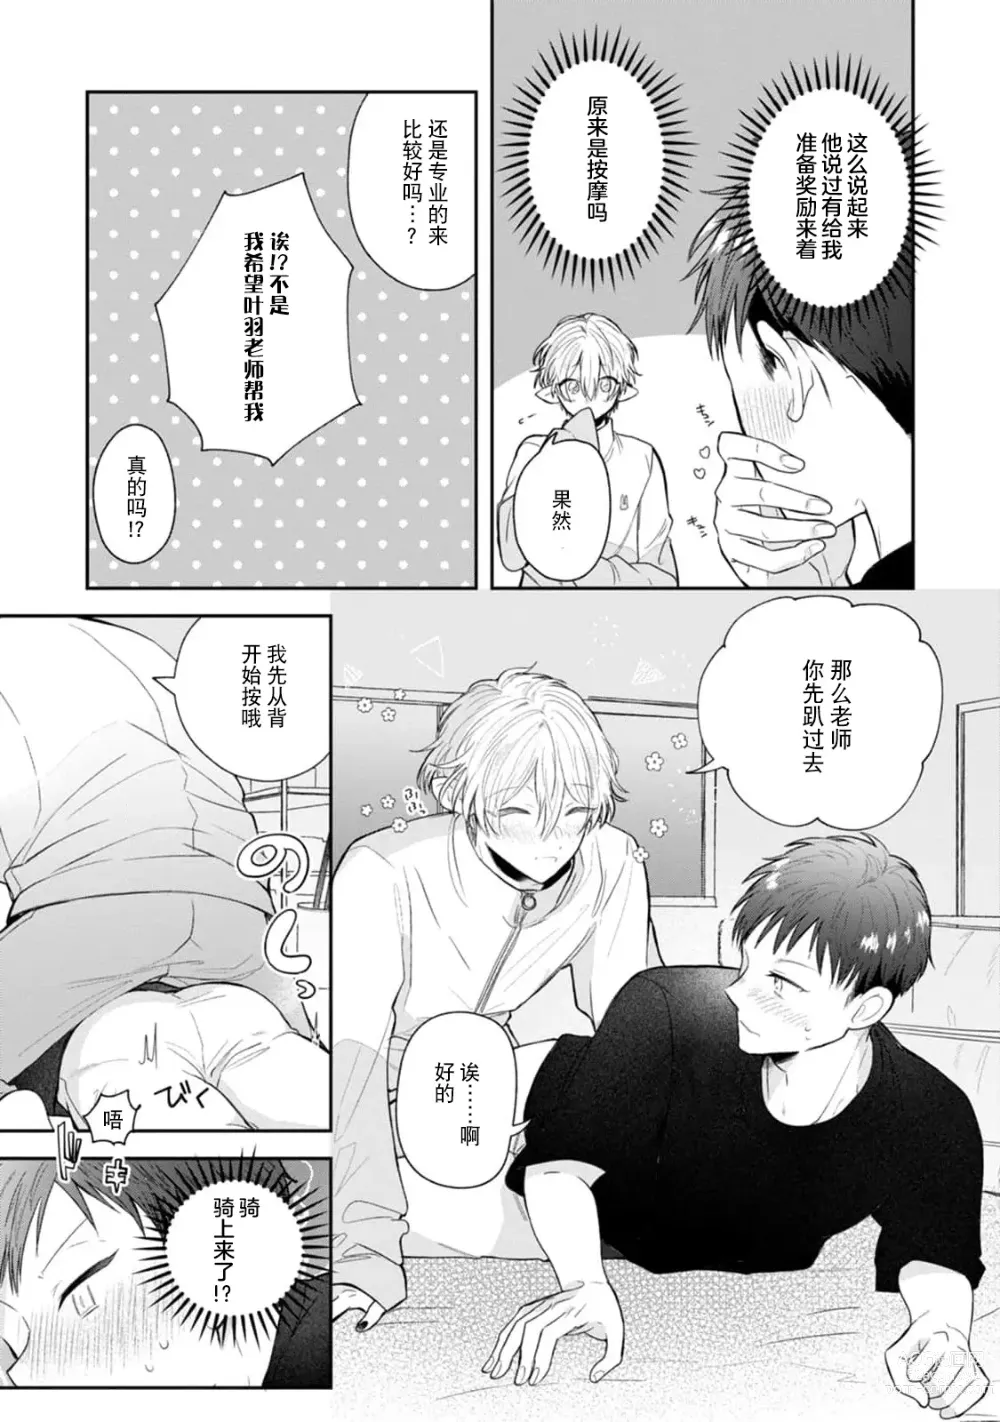 Page 141 of manga 叶羽老师全部是第一次 1-4